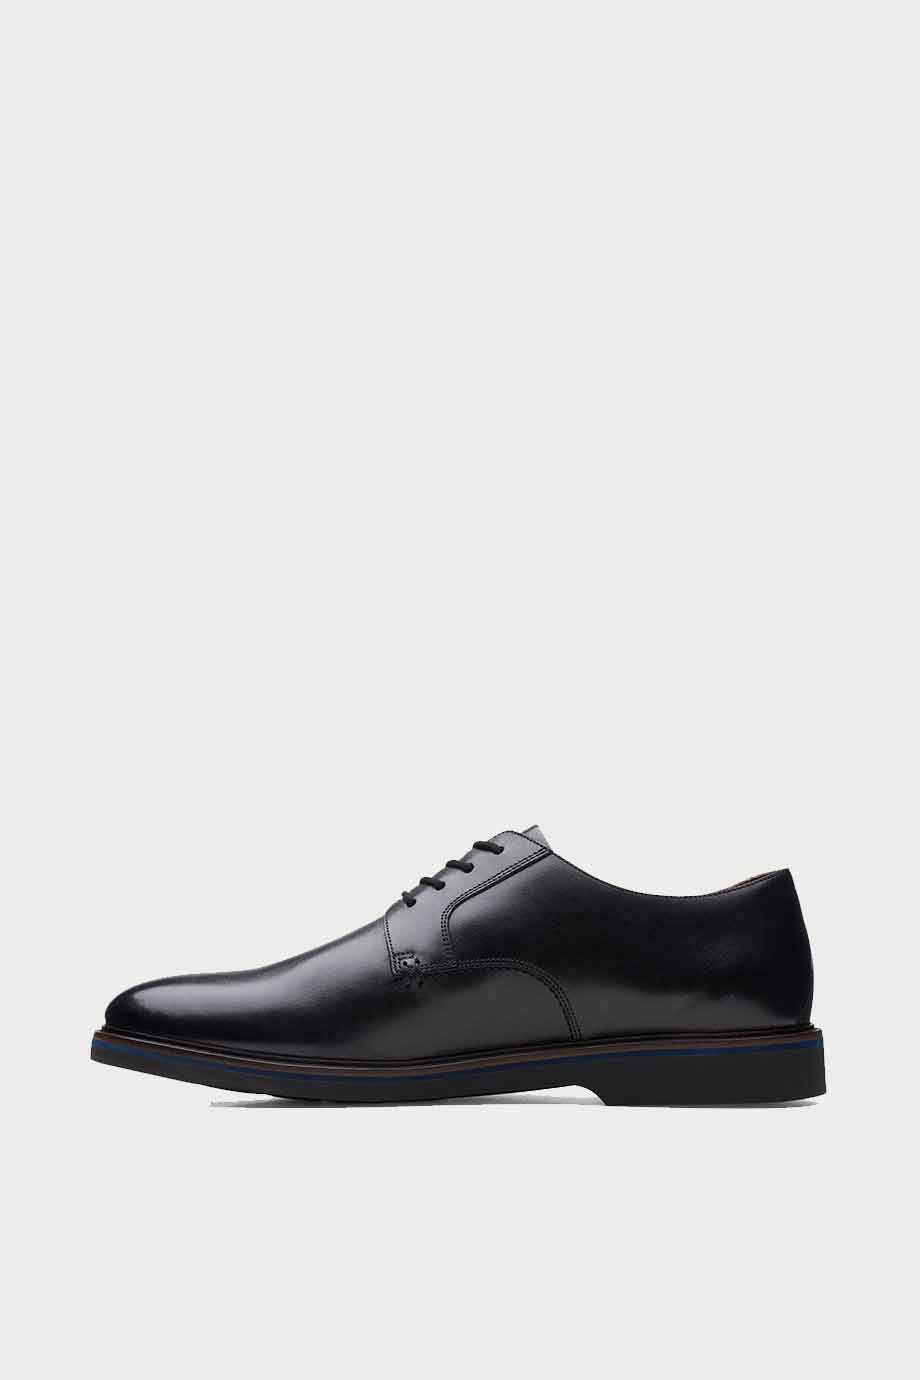 spiridoula metheniti shoes xalkida p Malwood Plain clarks black leather 5